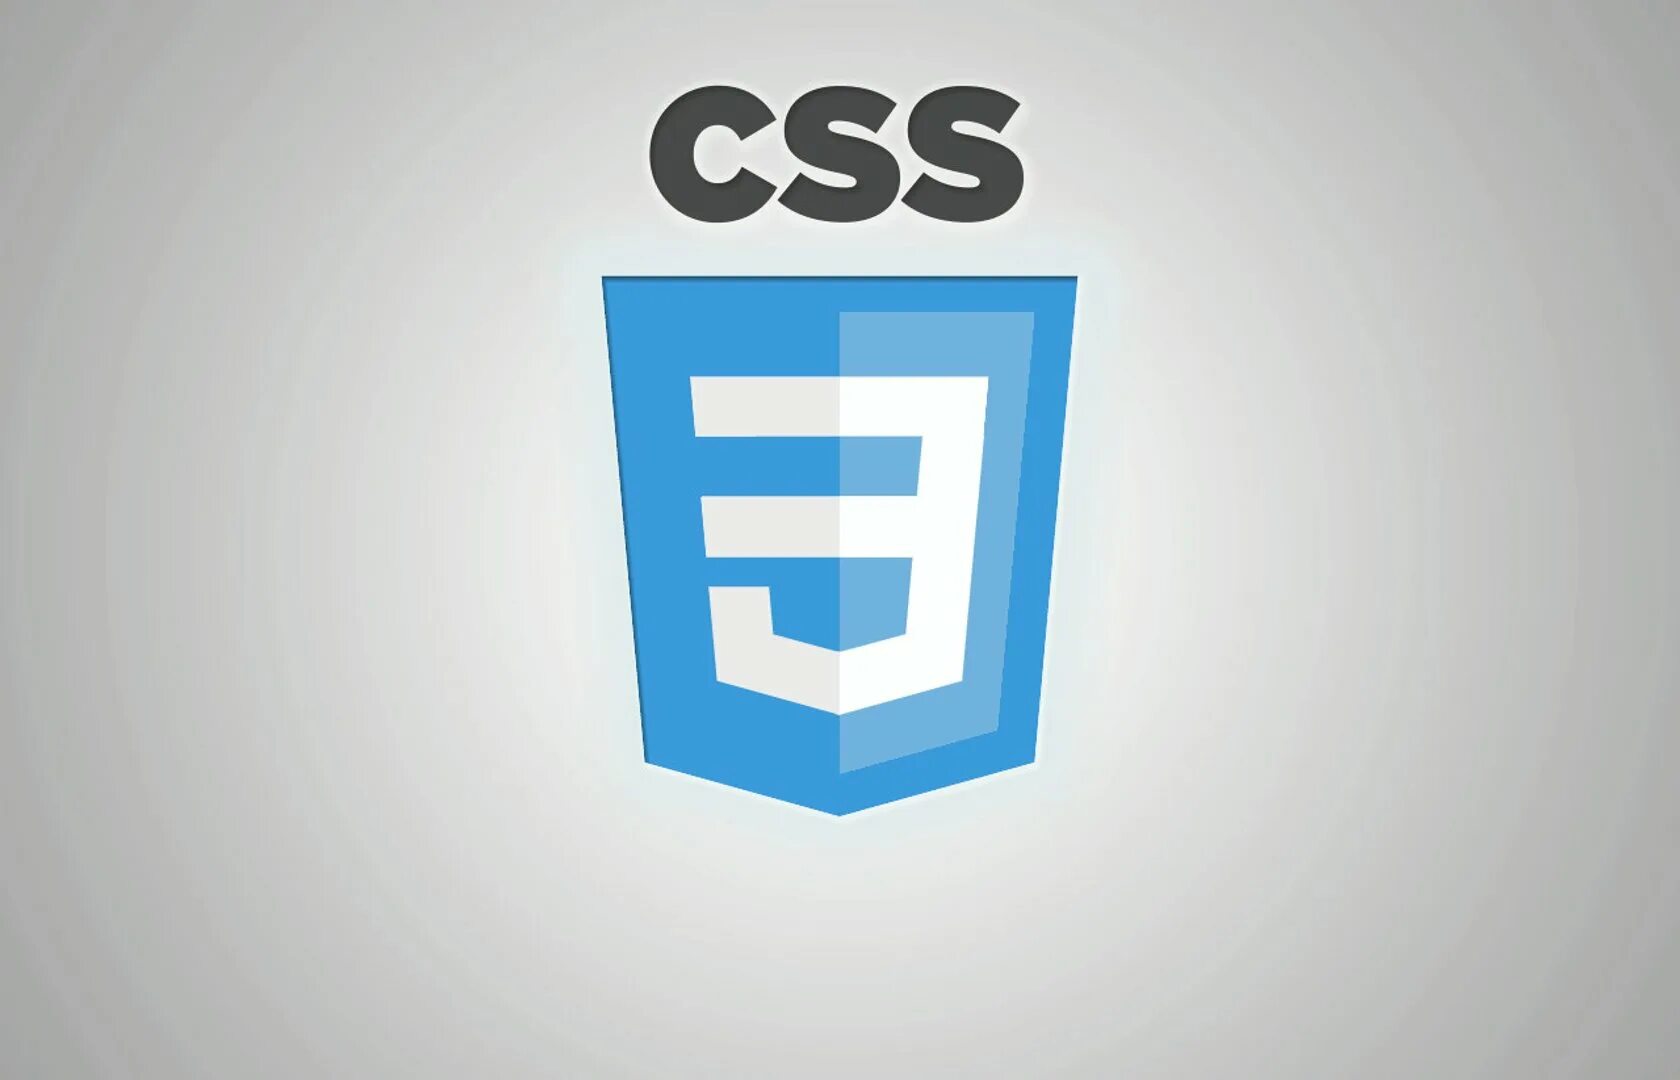 Css сети. Css3 логотип. Значок css3. CSS эмблема. CSS лого.